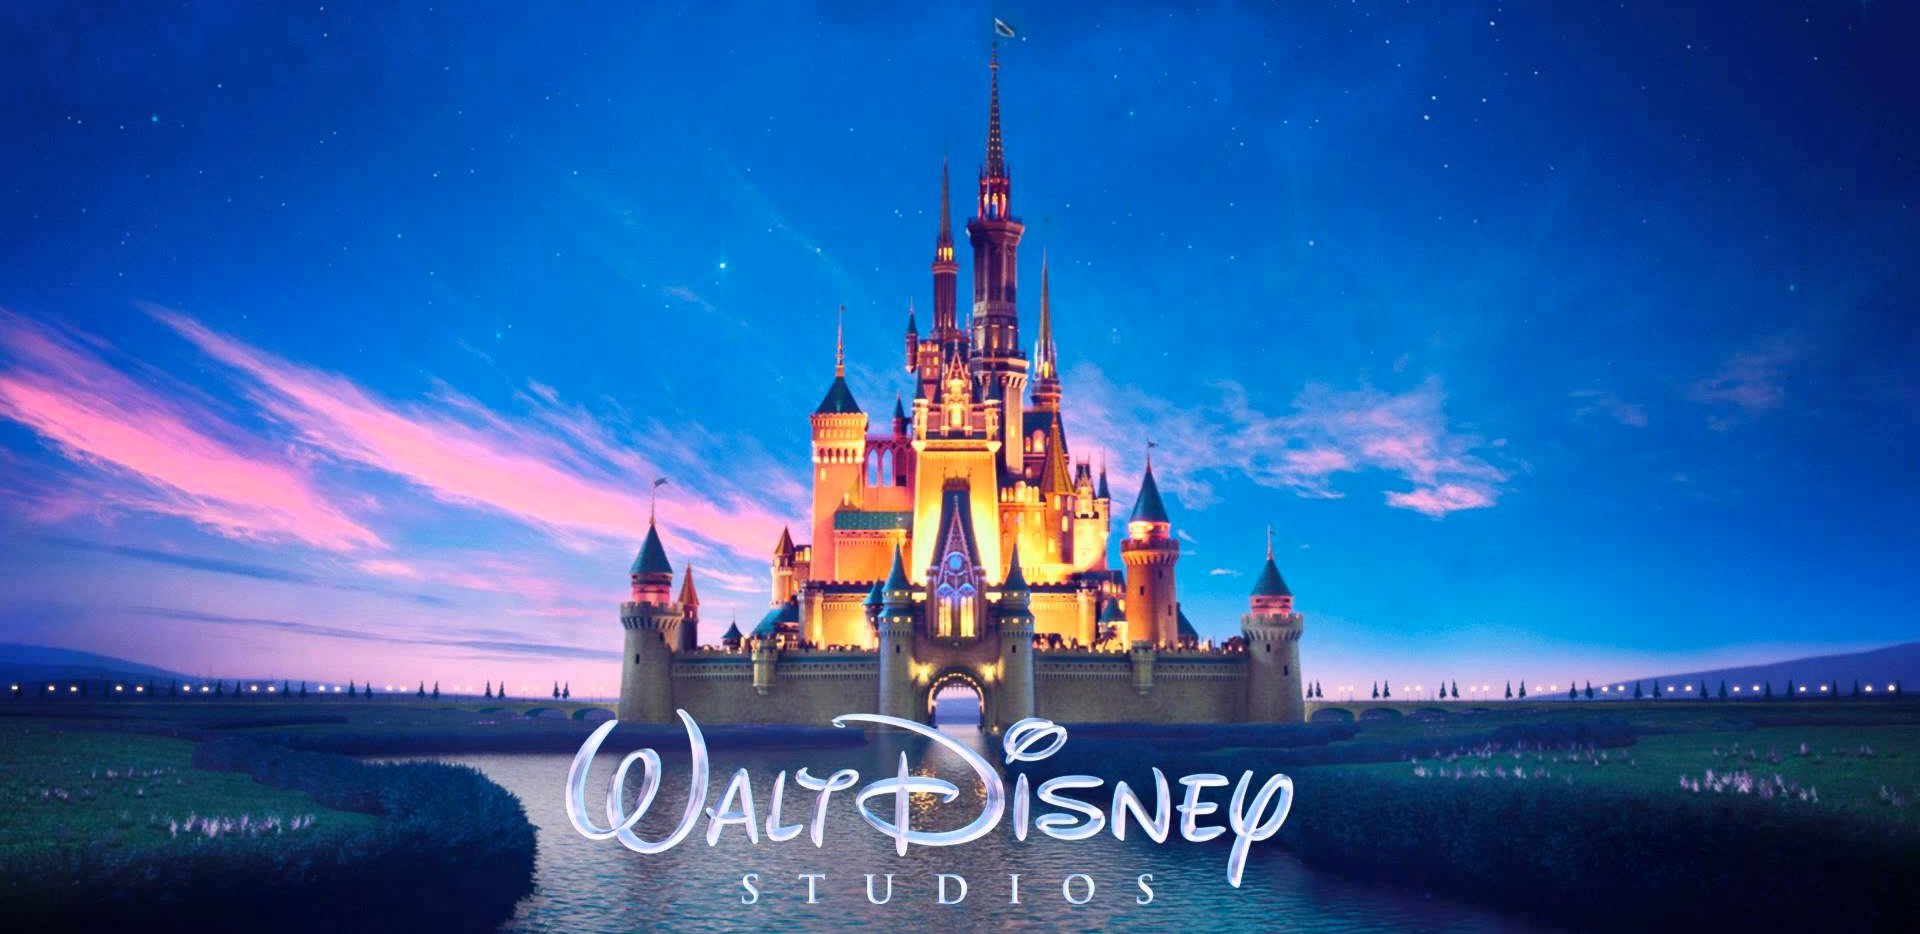 迪士尼經典童話改編《胡桃鉗與四大王國》敲定2018年秋季檔上映